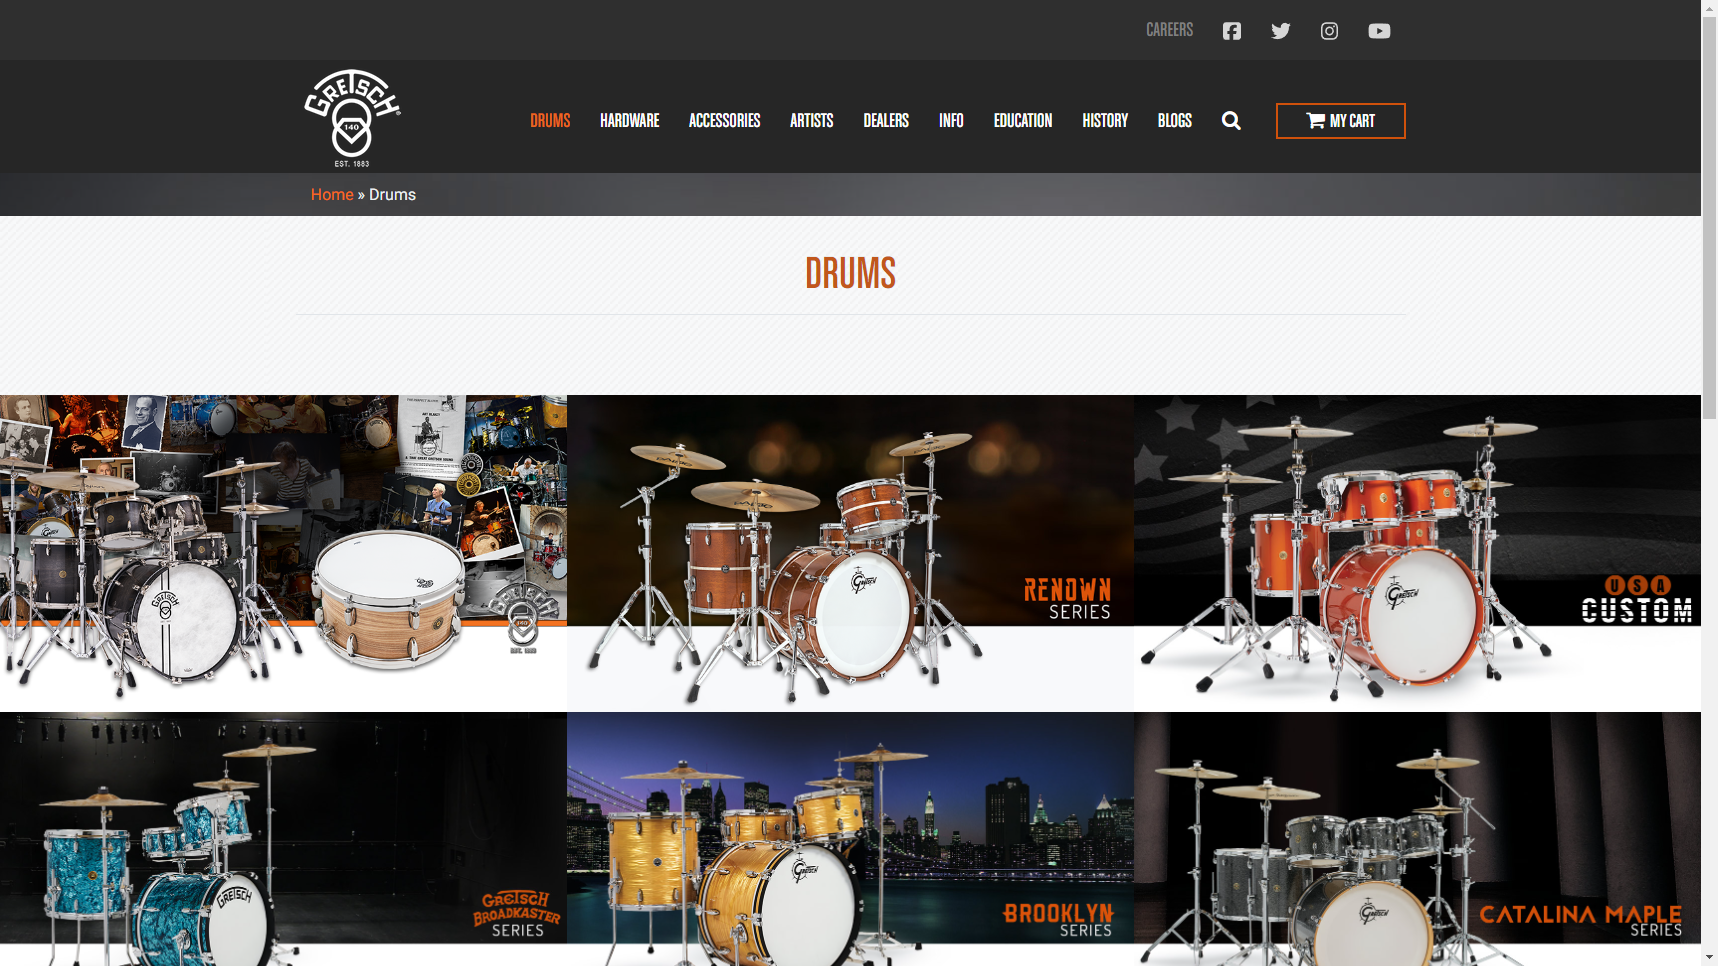 Gretsch Drums - Drum Set Manufacturer